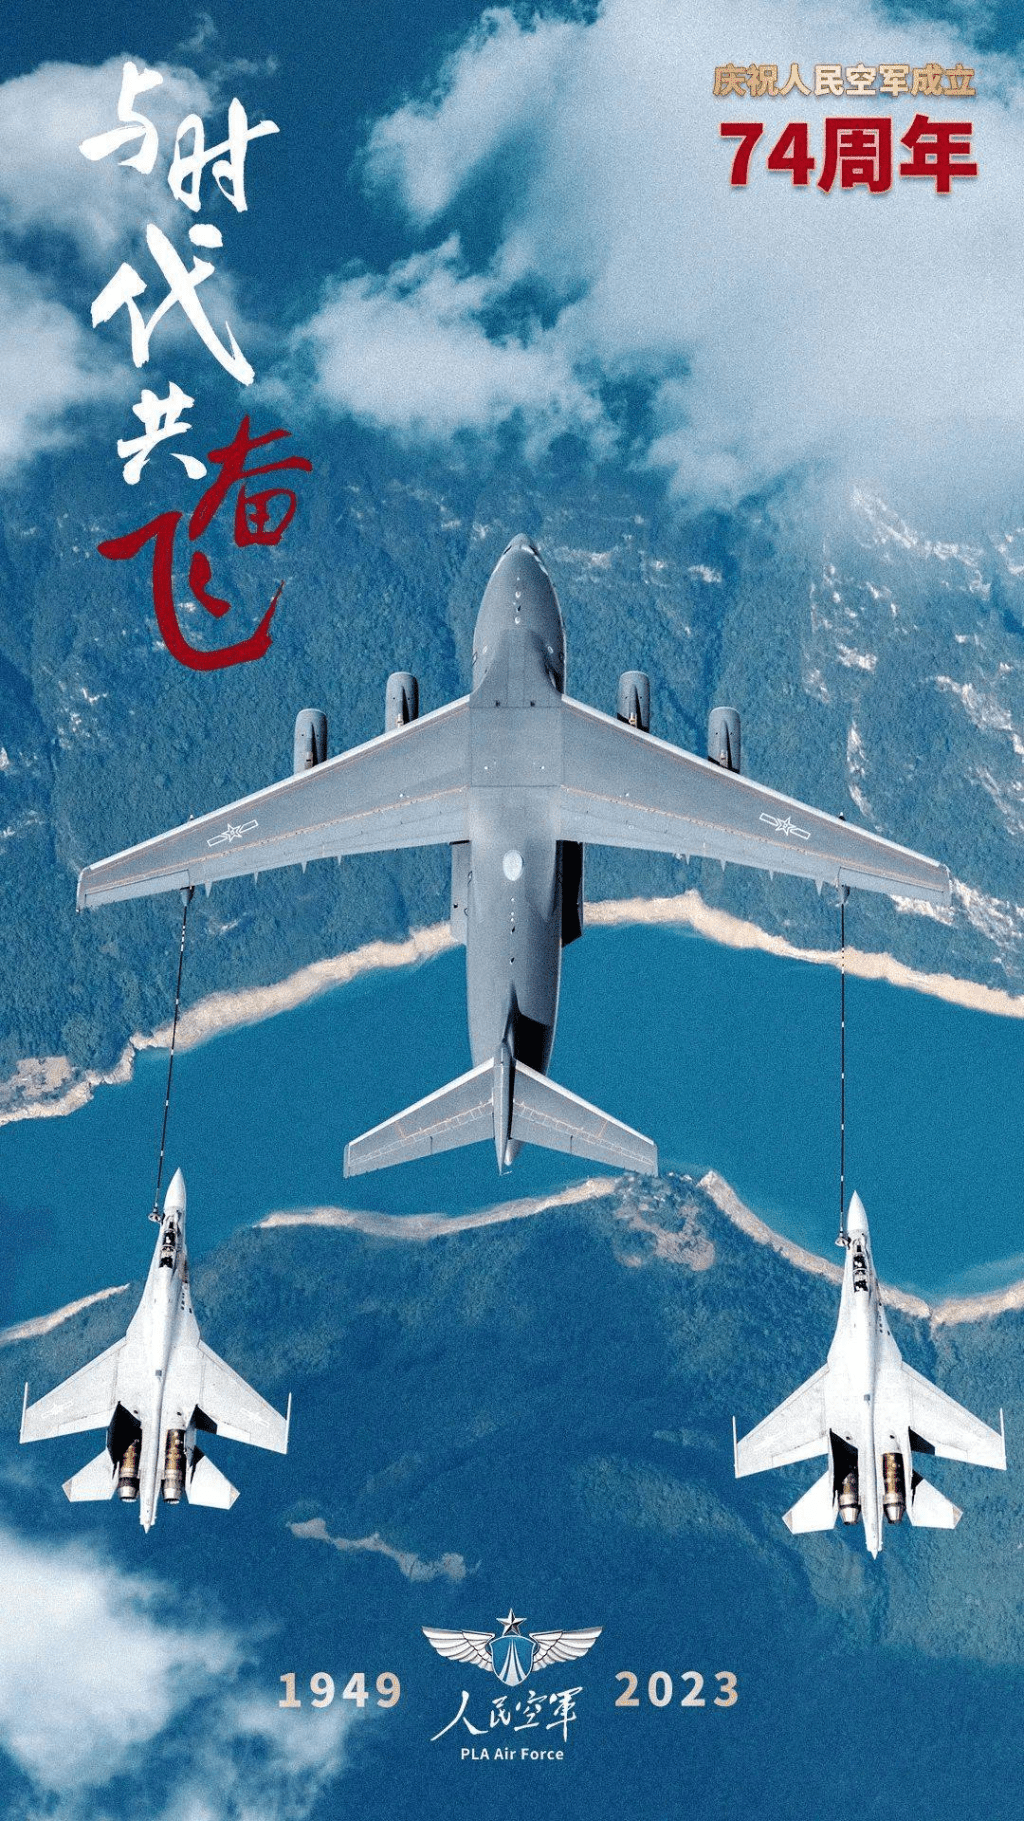 人民空軍成立74周年，發放多款空軍宣傳照片。